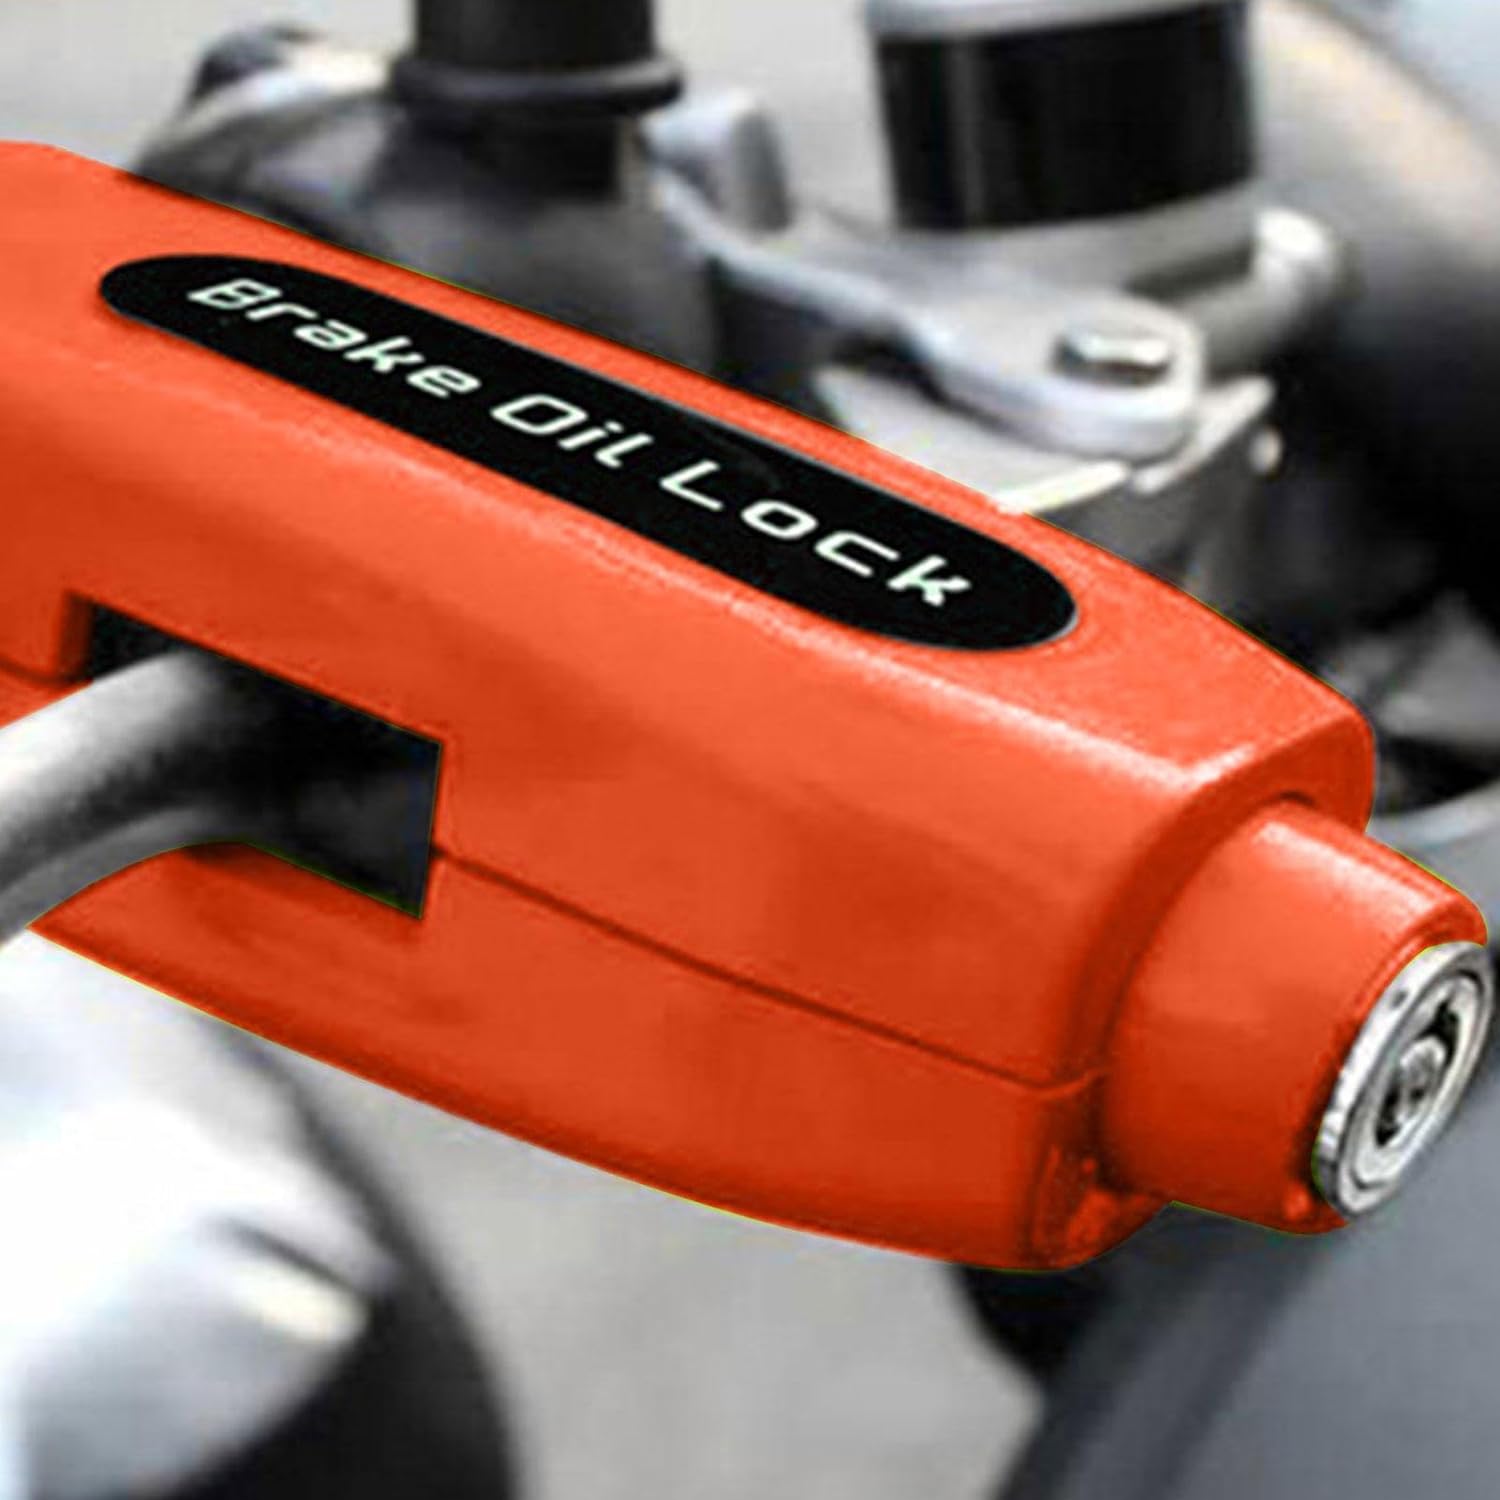 BrakeLock - Sichern Sie Ihren Motor oder Roller durch Feststellen des Bremsgriffs - Frest